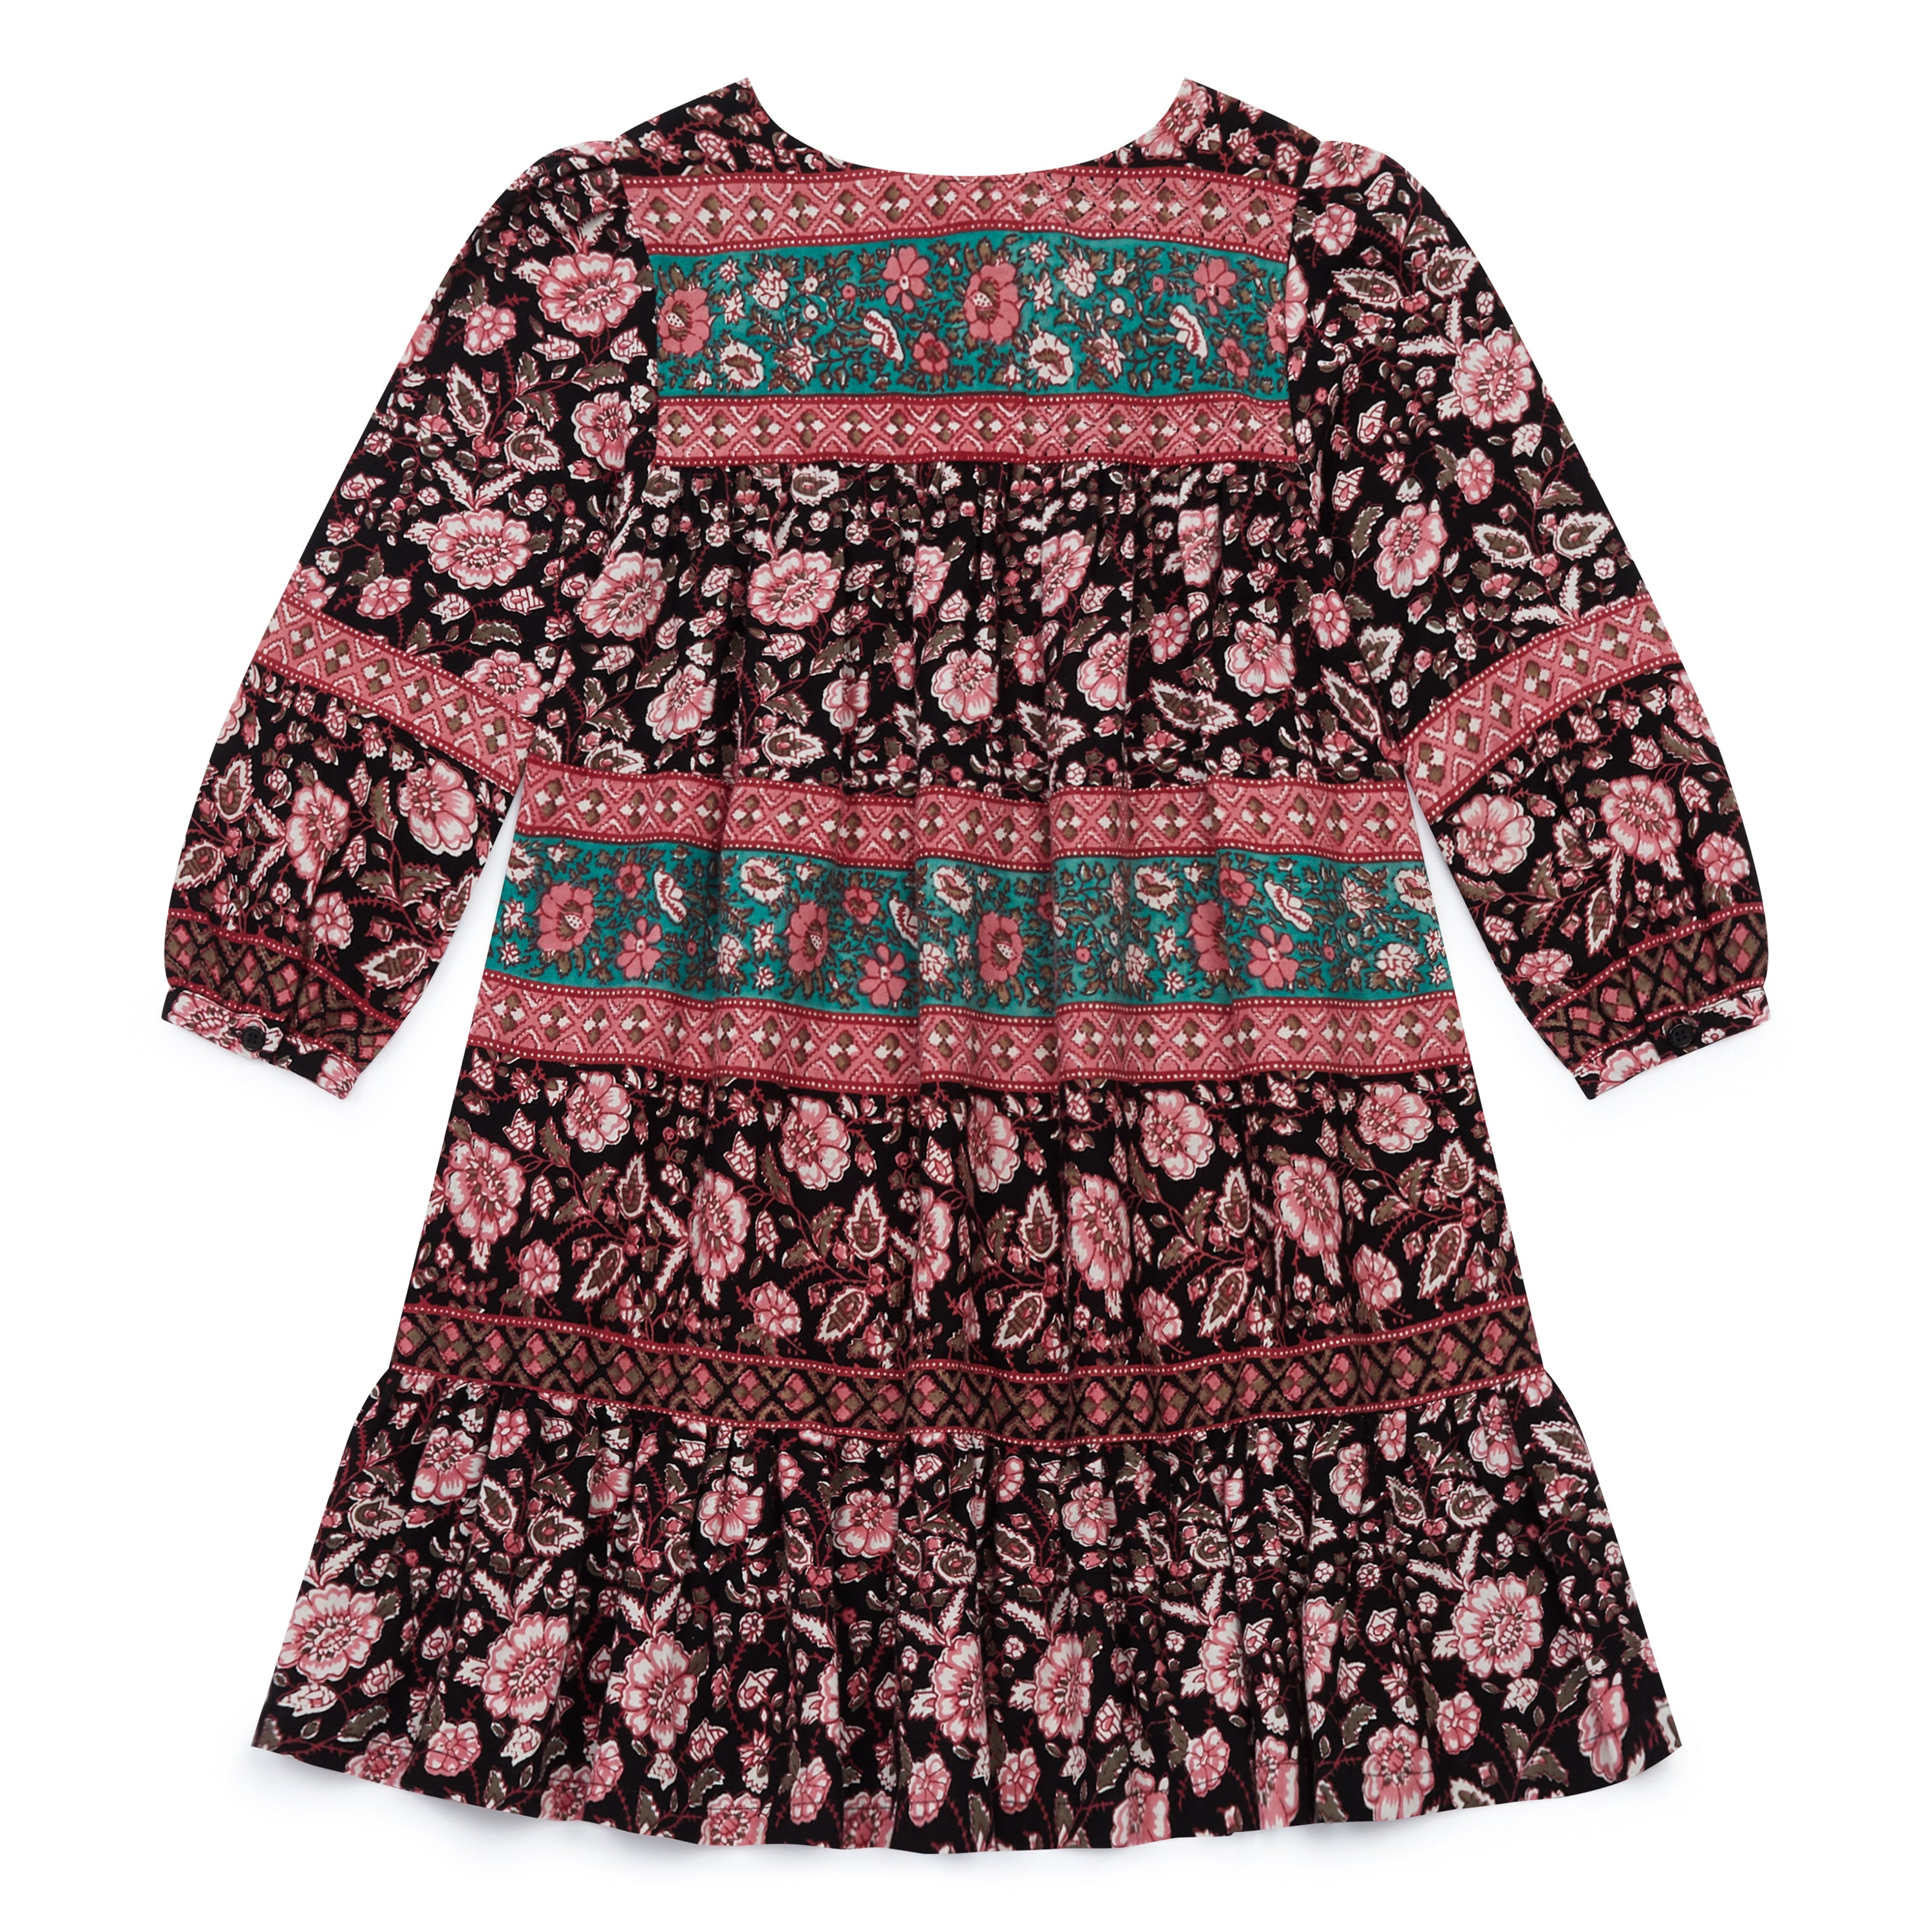 Girls Black & Pink Printing Cotton Dress